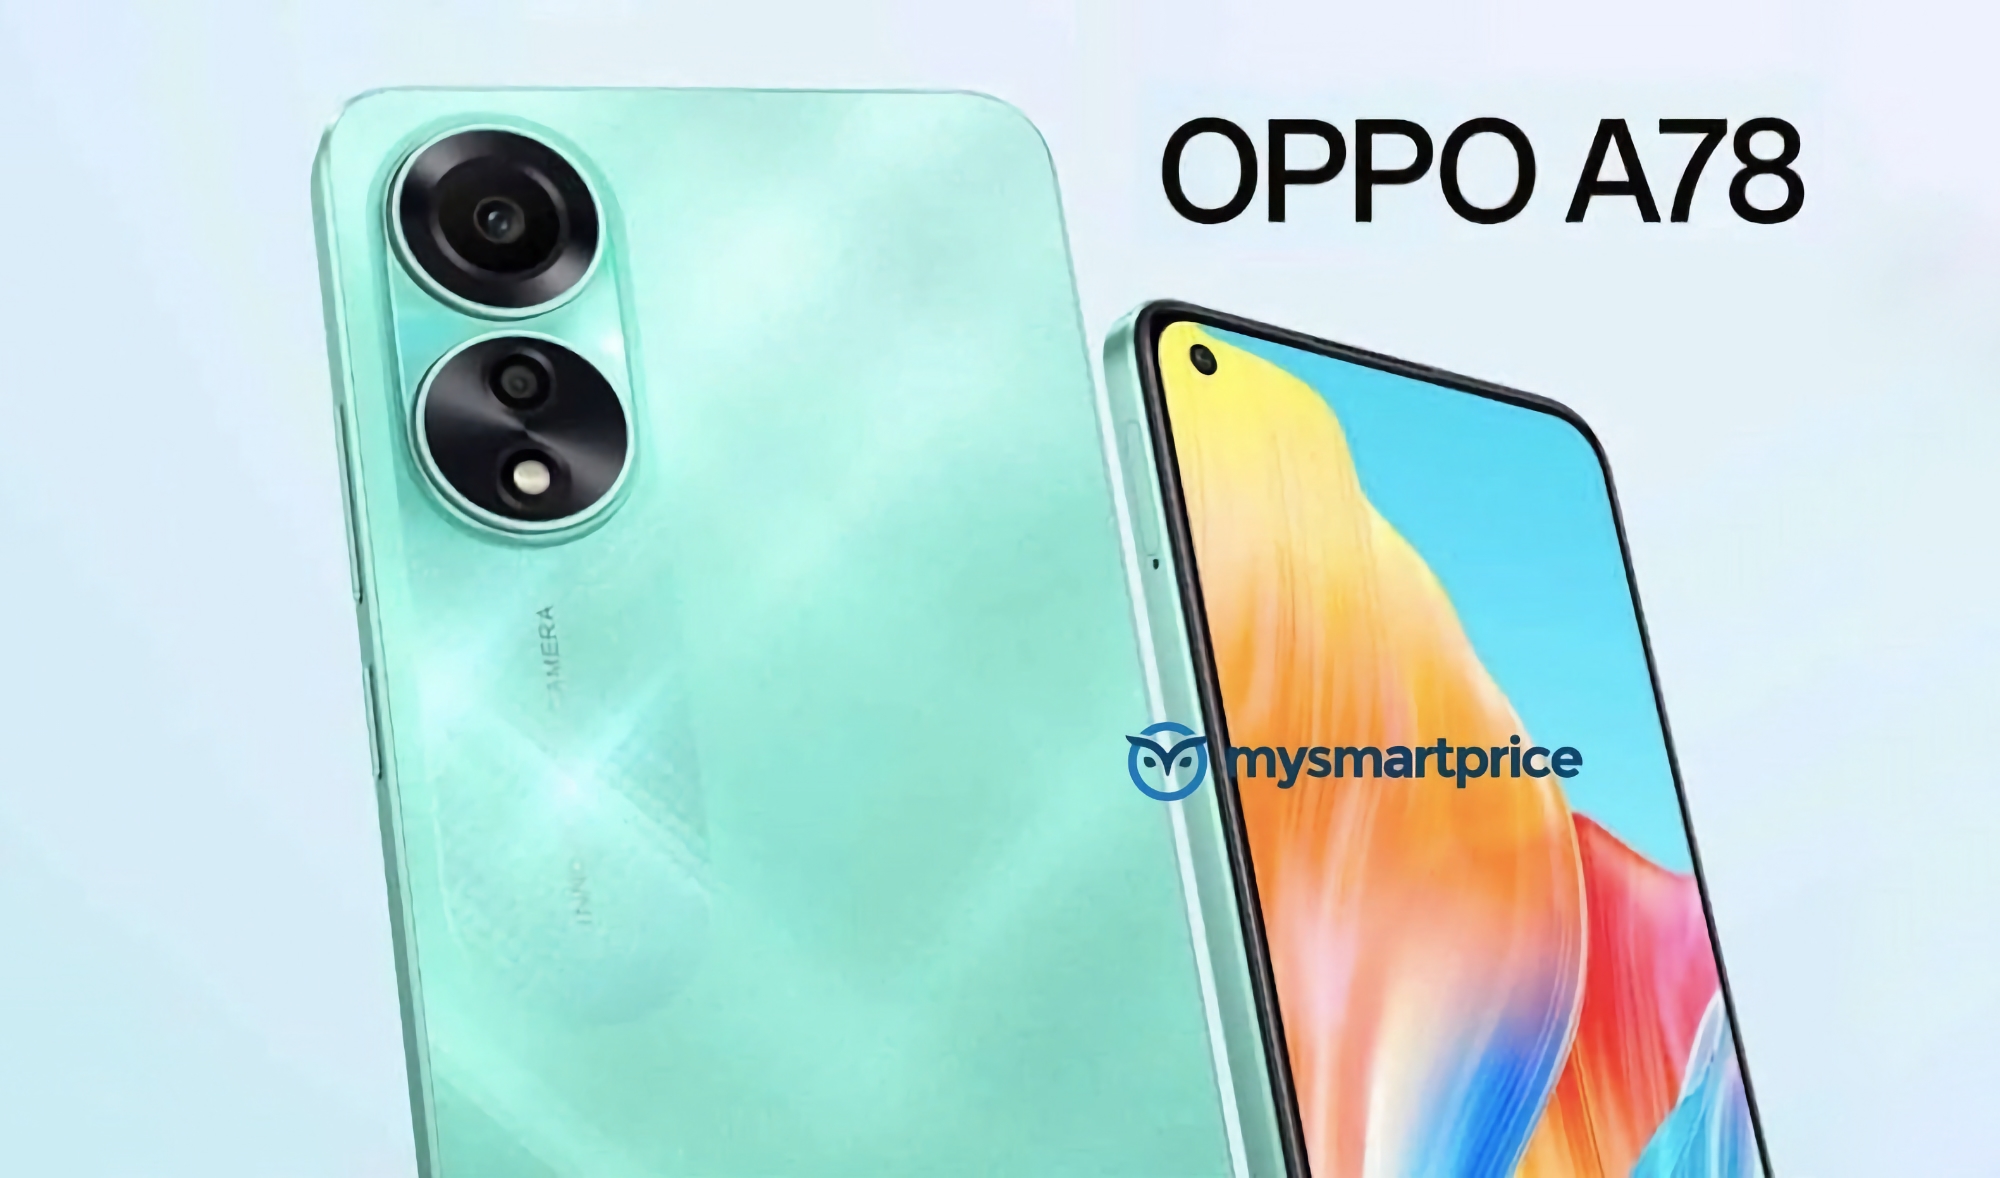 OPPO stellt das OPPO A78 4G vor: Günstiges Smartphone mit 90Hz AMOLED-Bildschirm, Snapdragon 680-Chip und 50MP-Kamera